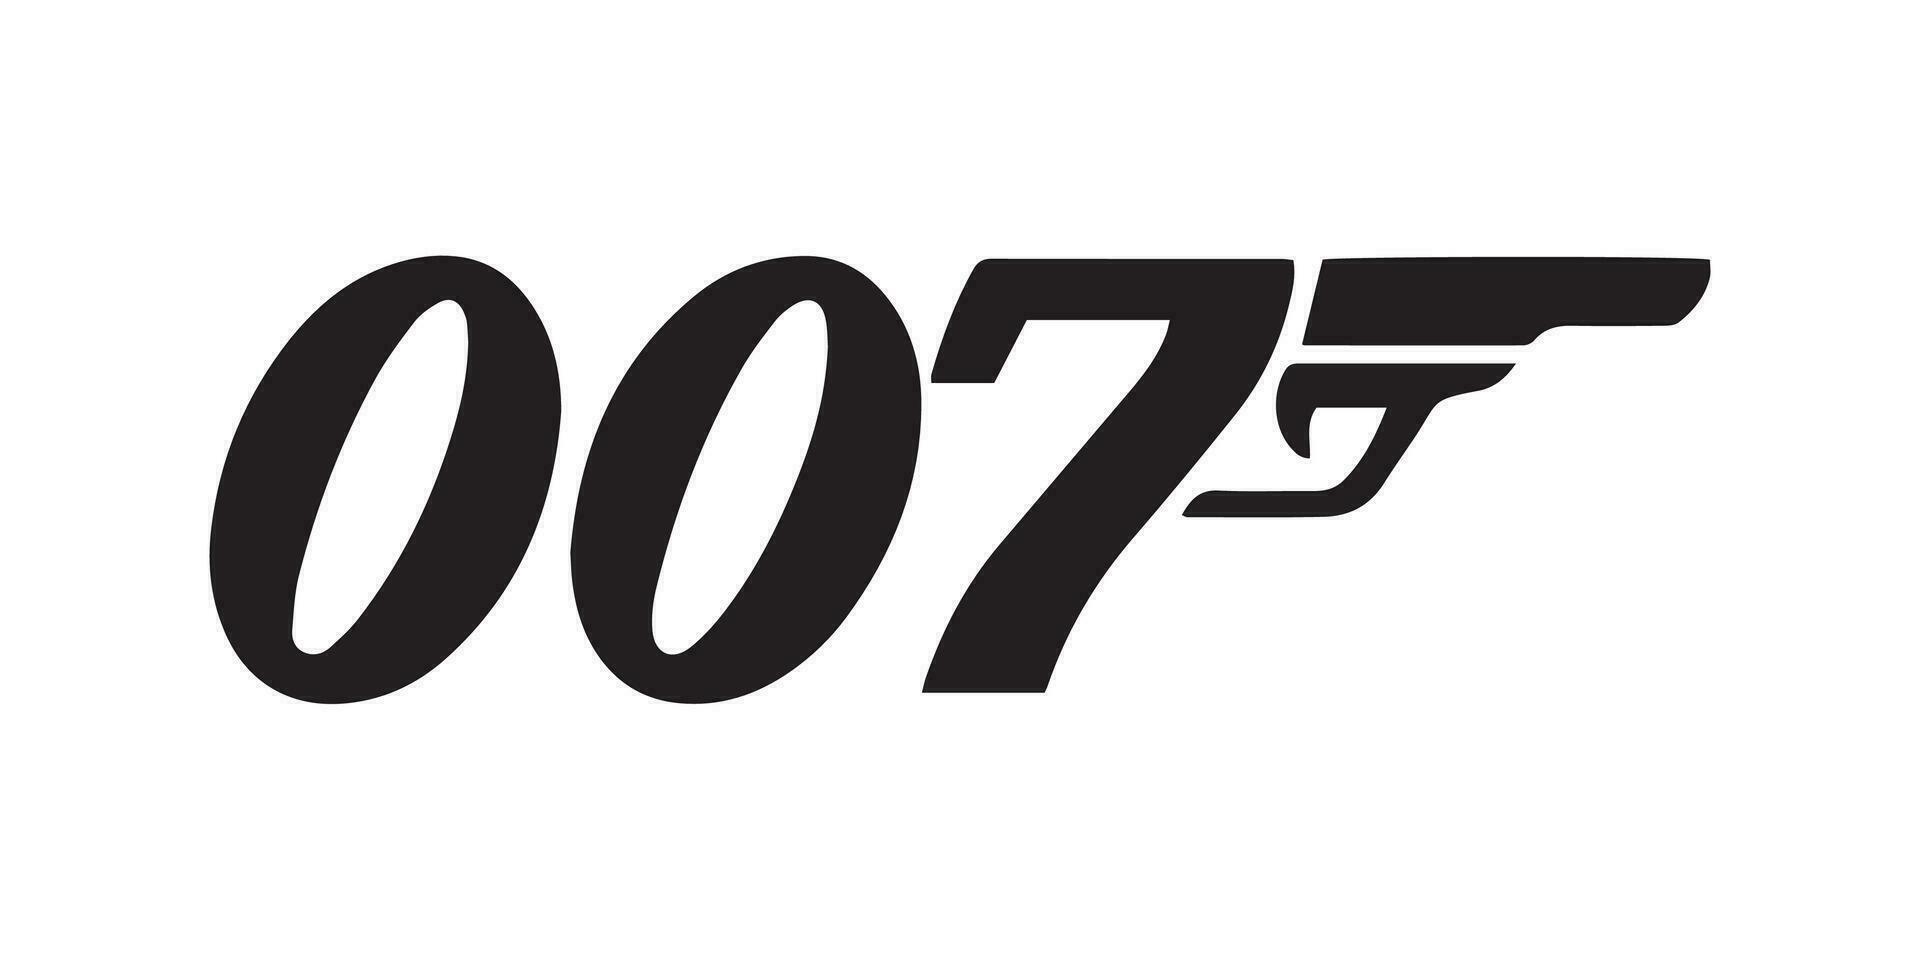 James enlace logo, 007 vector